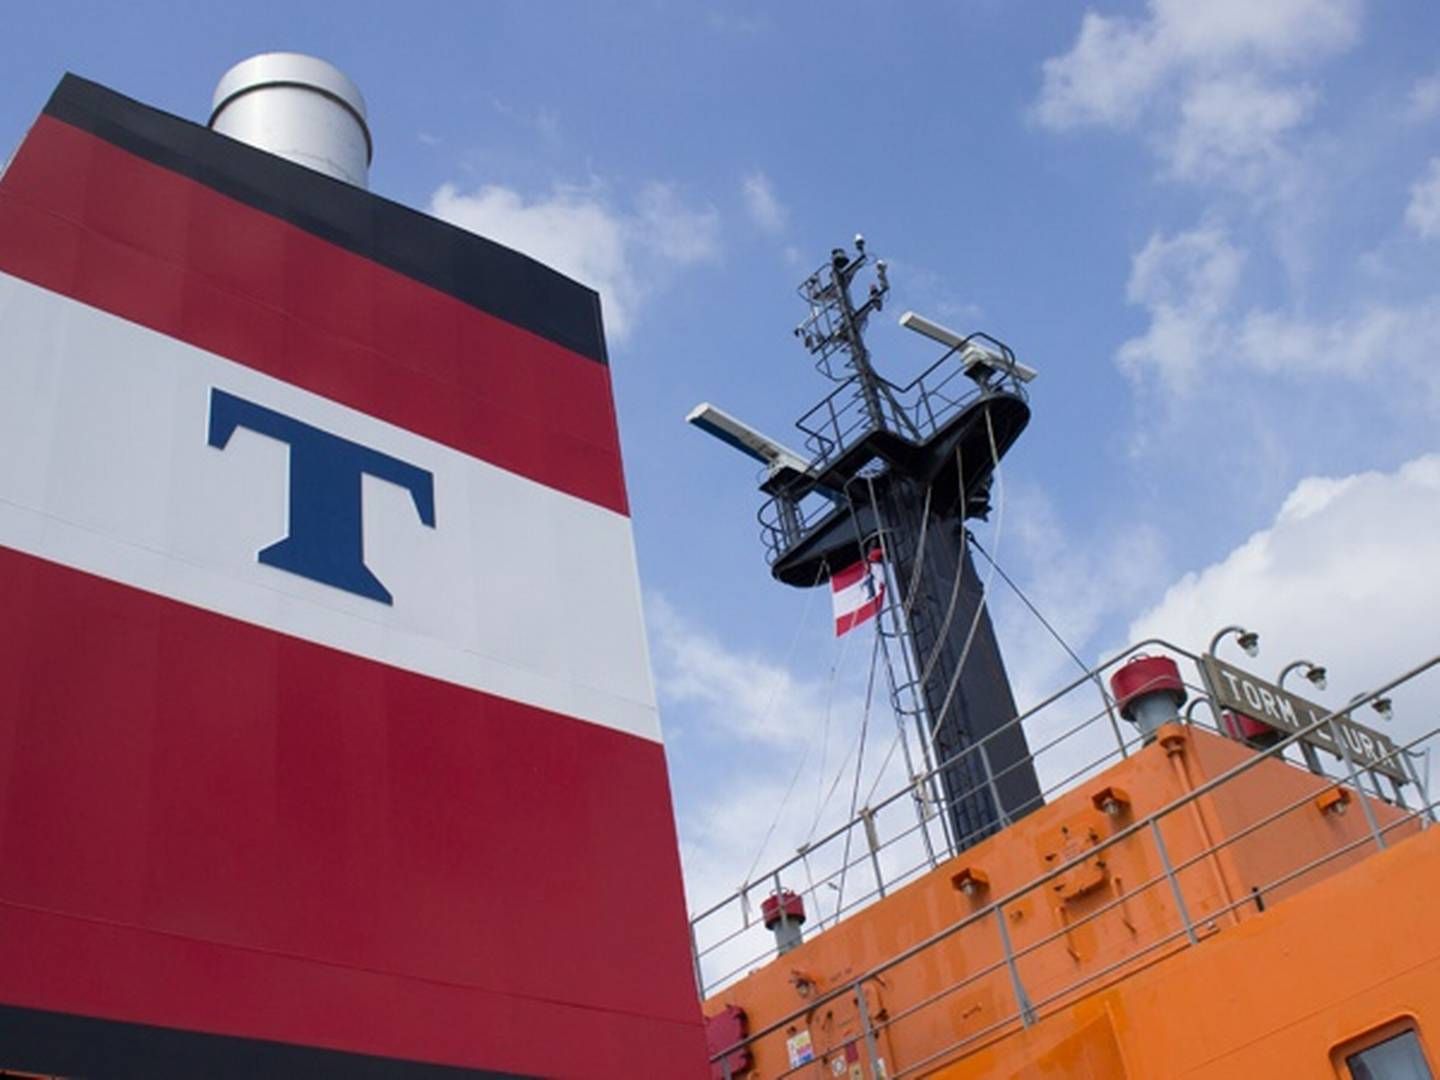 Produkttankrederiet Torm har installeret røgrensning (scubbers) på over halvdelen af skibsflåden. | Foto: Shippingwatch/ Søren Pico